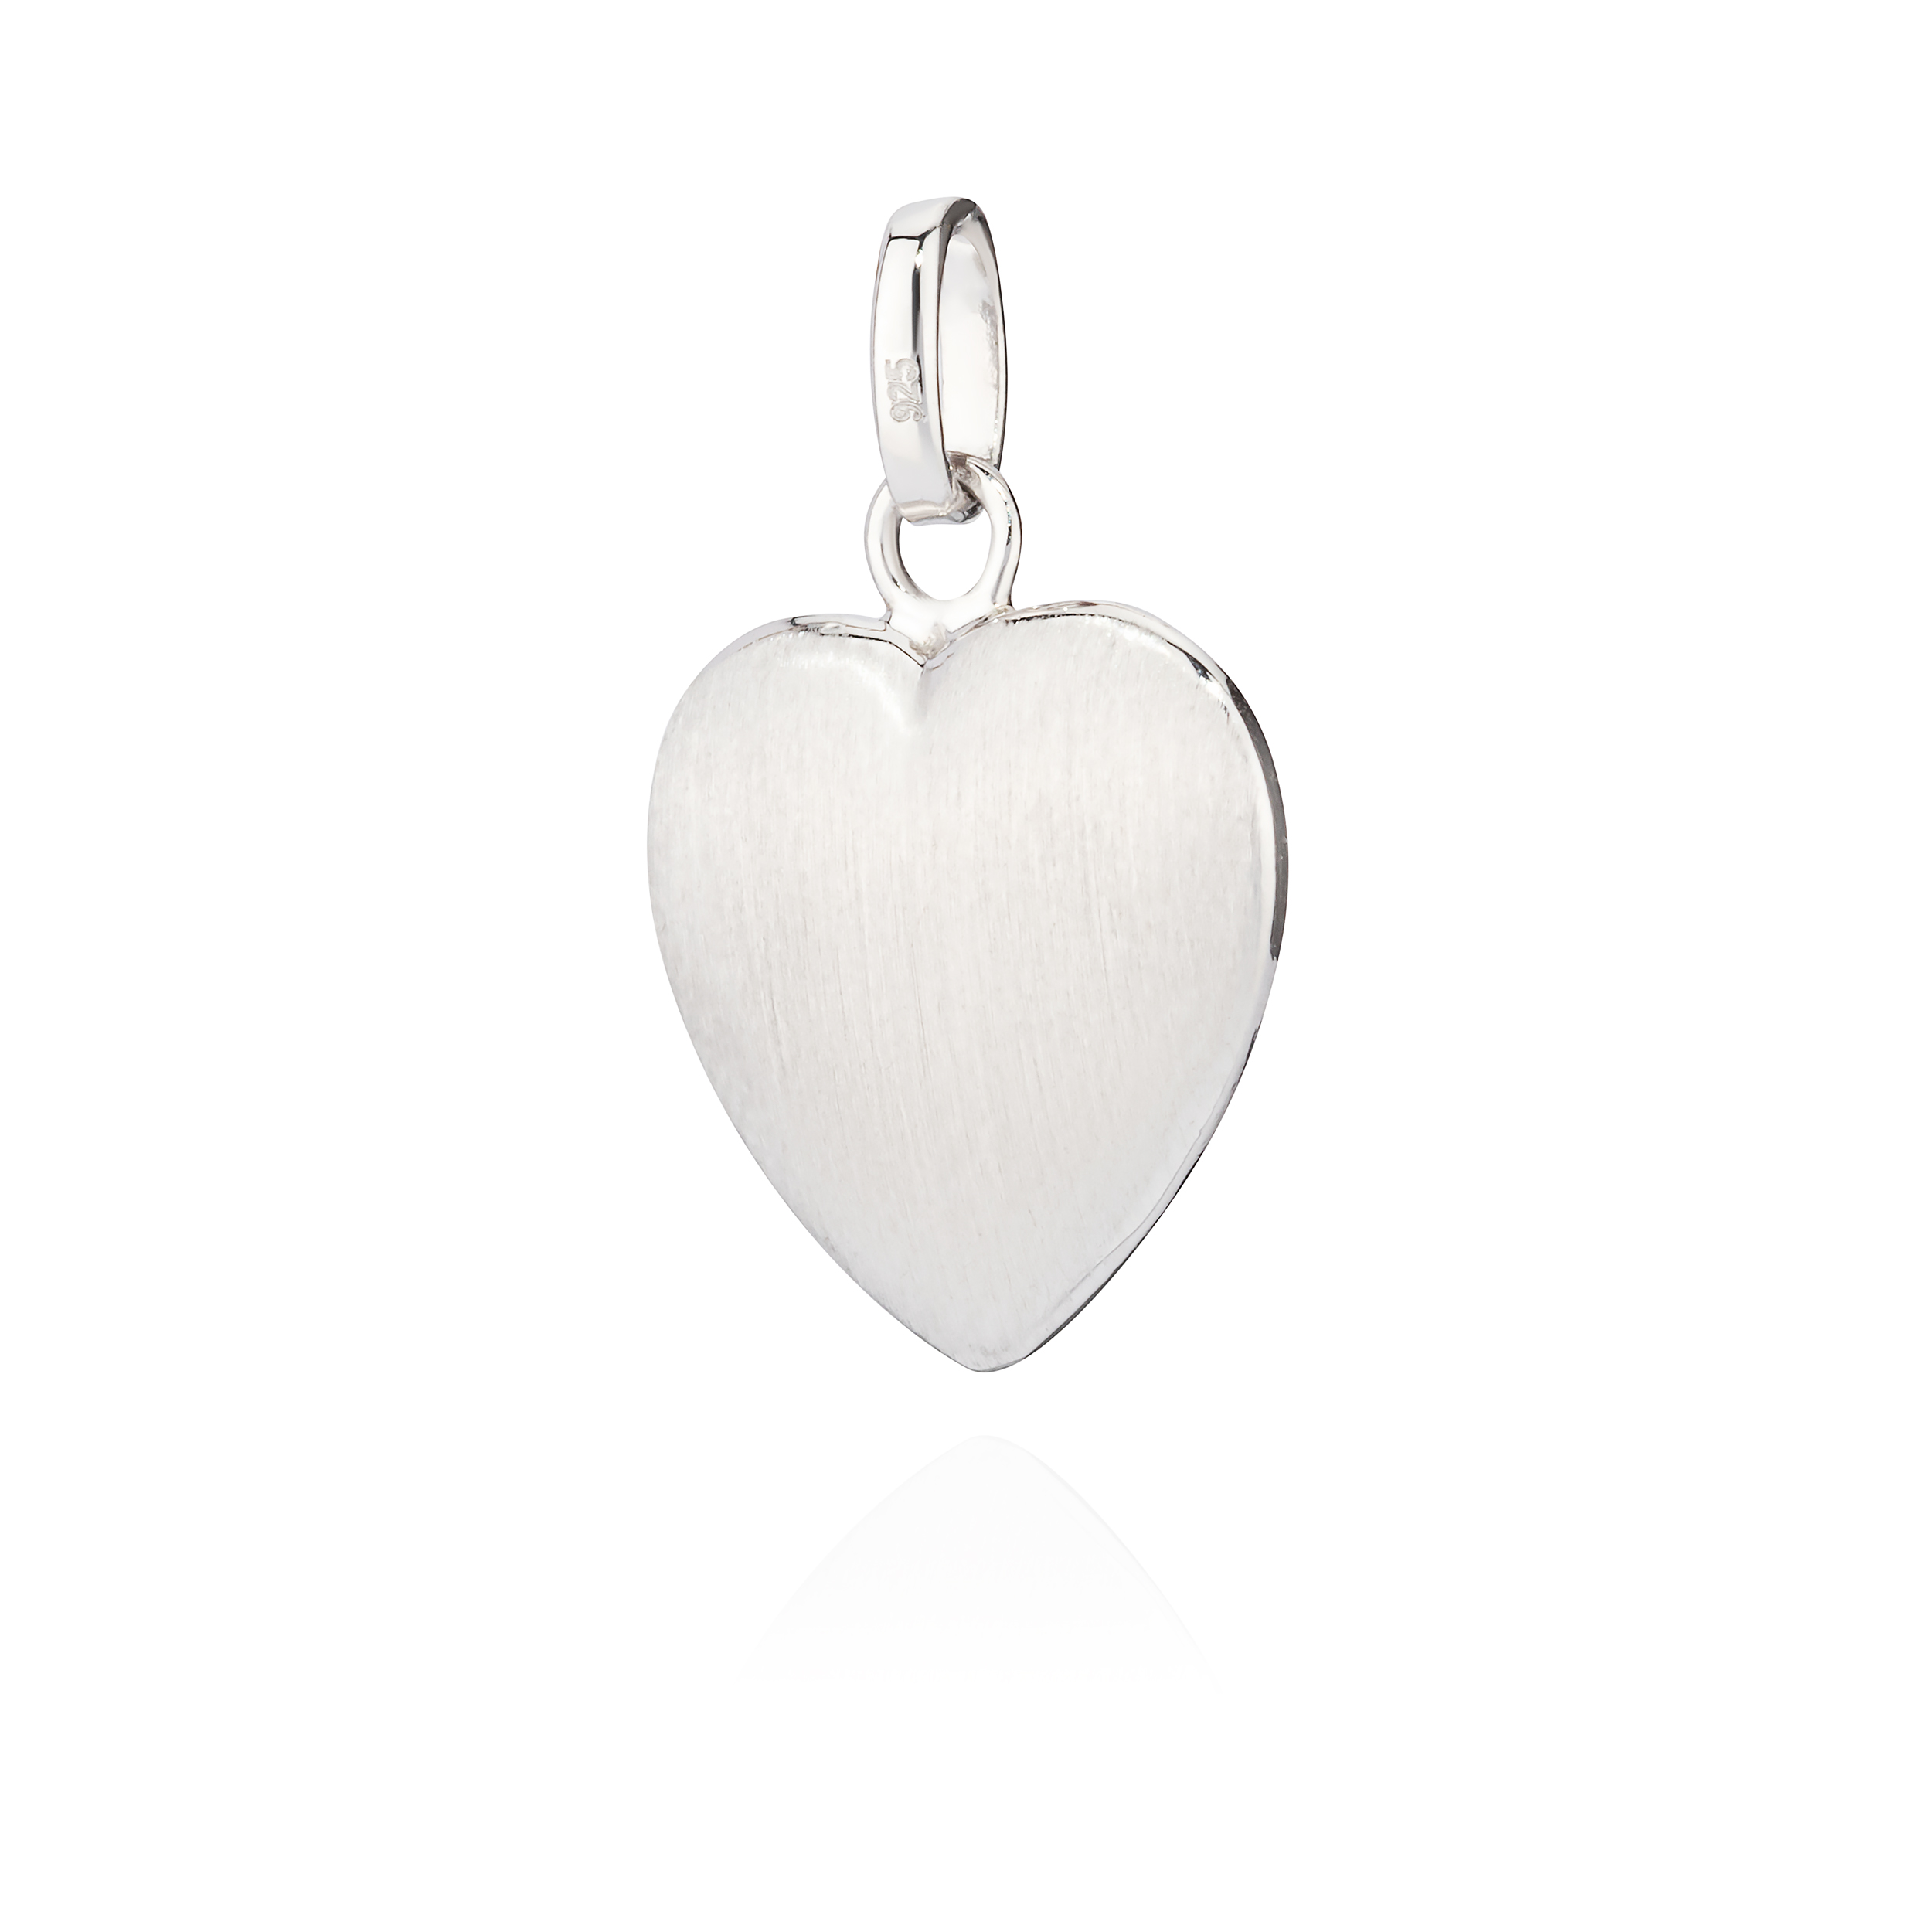 Kettenanhänger kleines Herz 925 glanz-matt anlaufgeschützt Silber eBay | Amulett